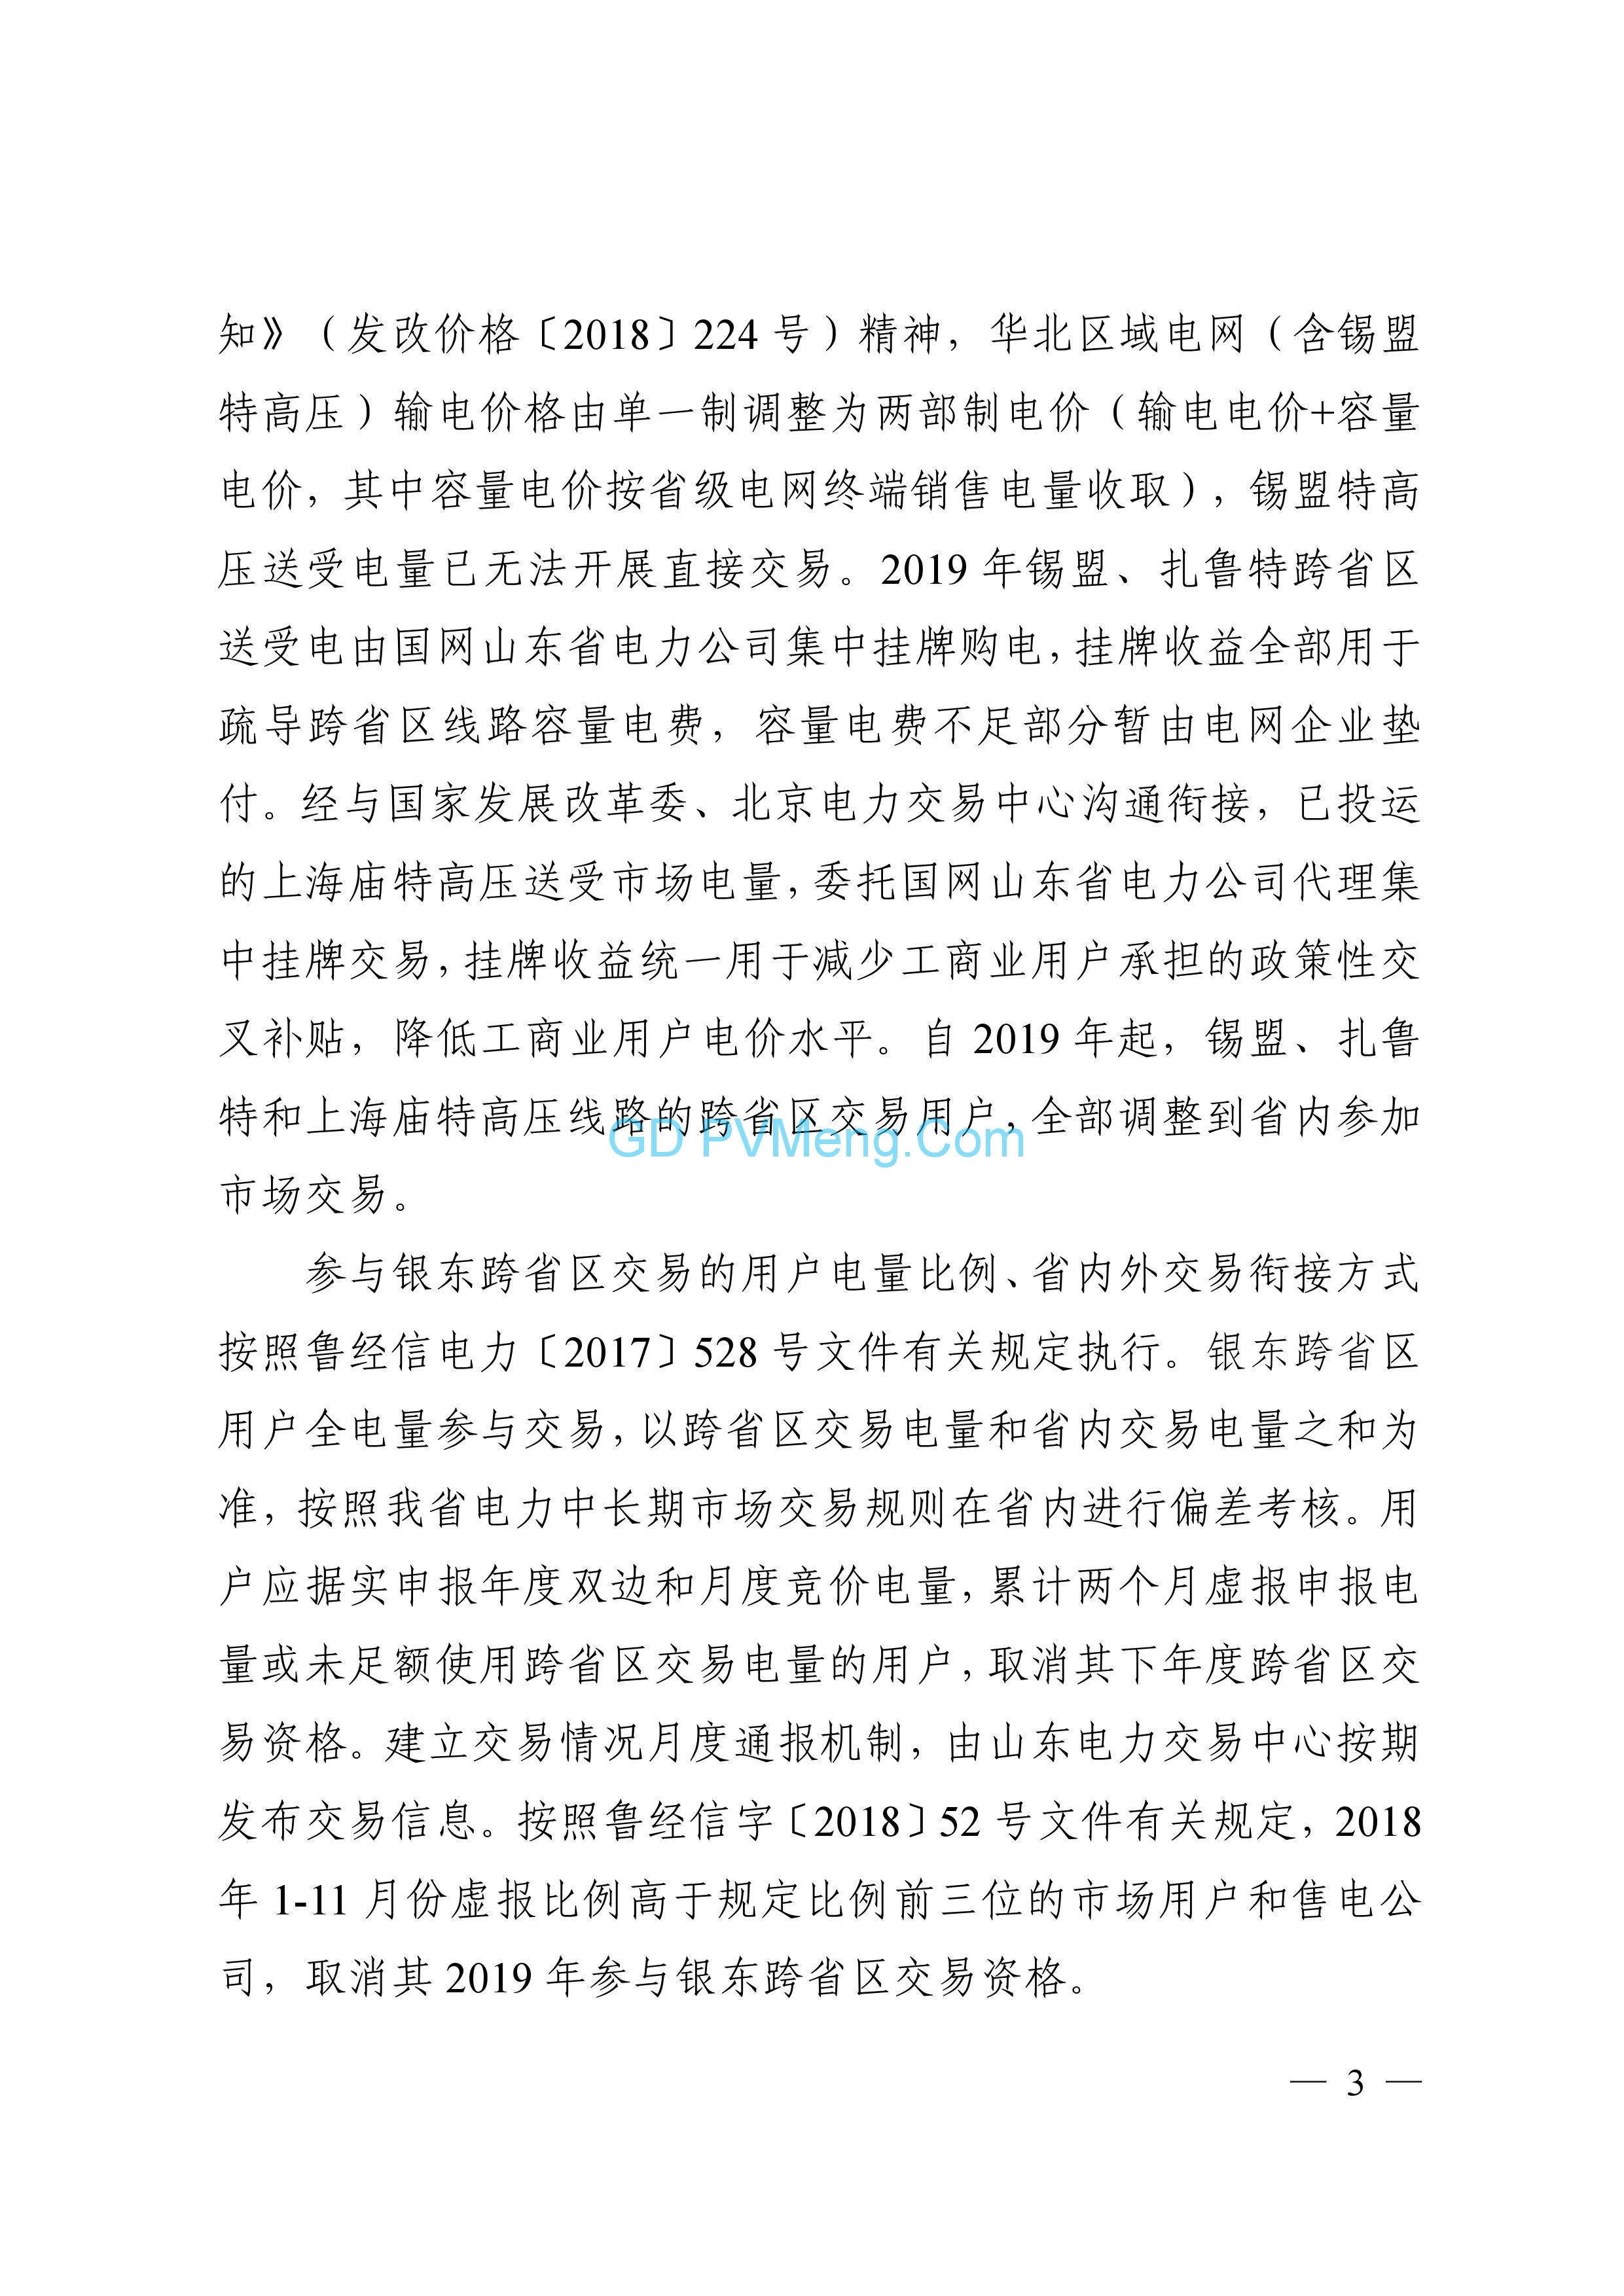 山东省关于2019年电力市场交易工作安排的通知（鲁能源字〔2018〕36号）20181214